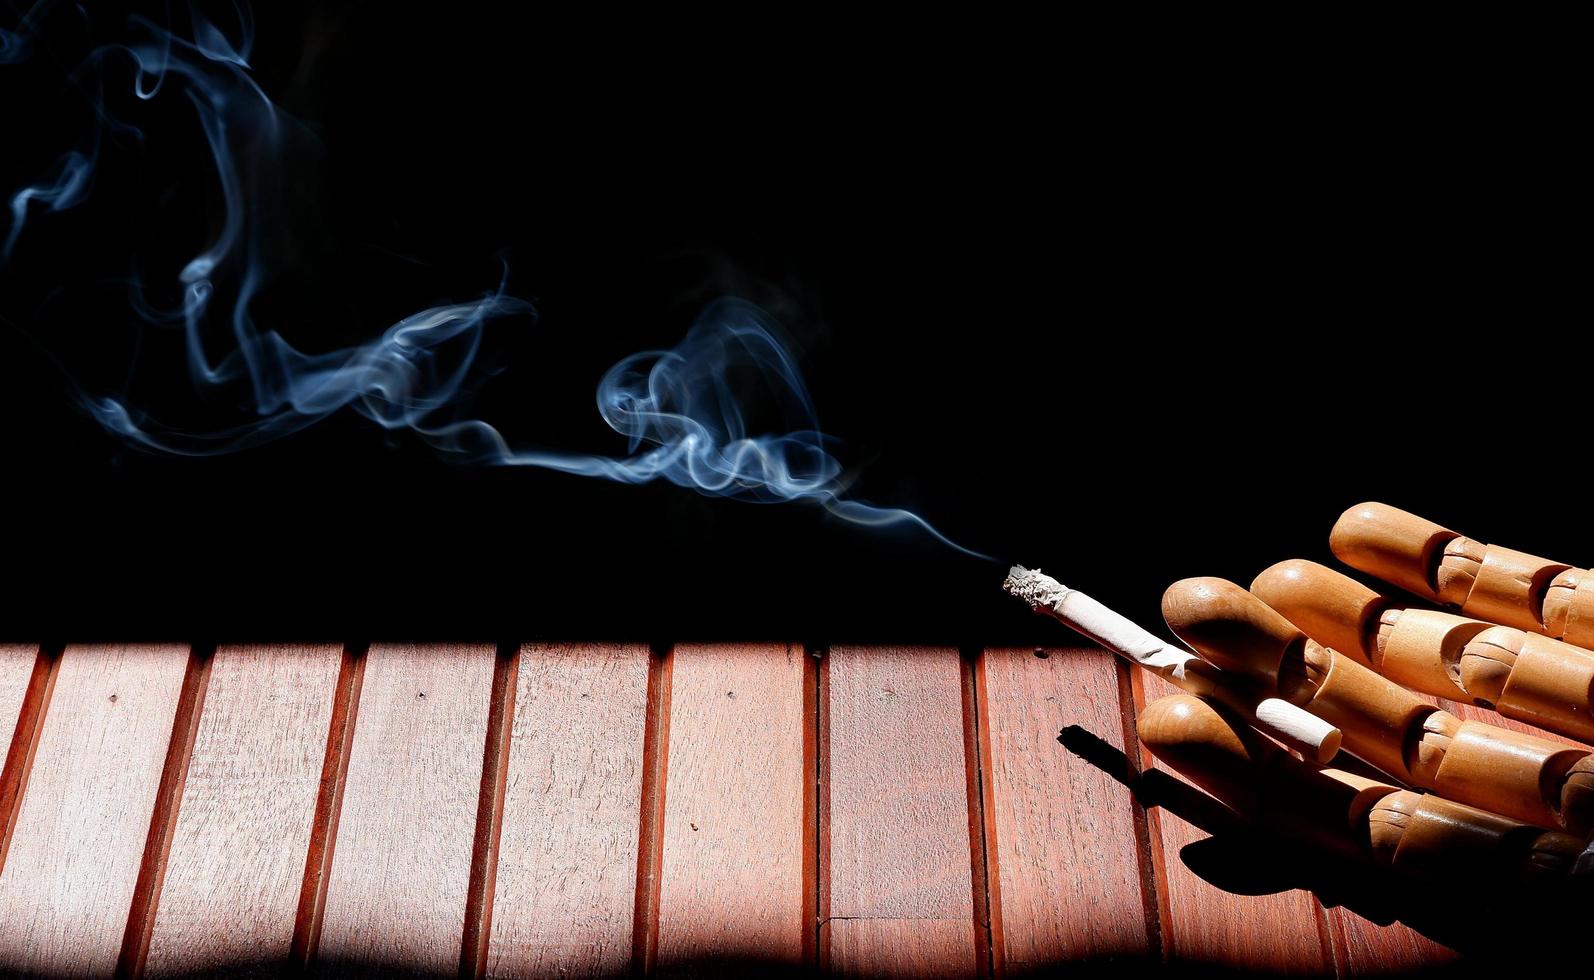 mano de maniquí de madera sosteniendo un cigarrillo en el suelo de madera de fondo oscuro foto